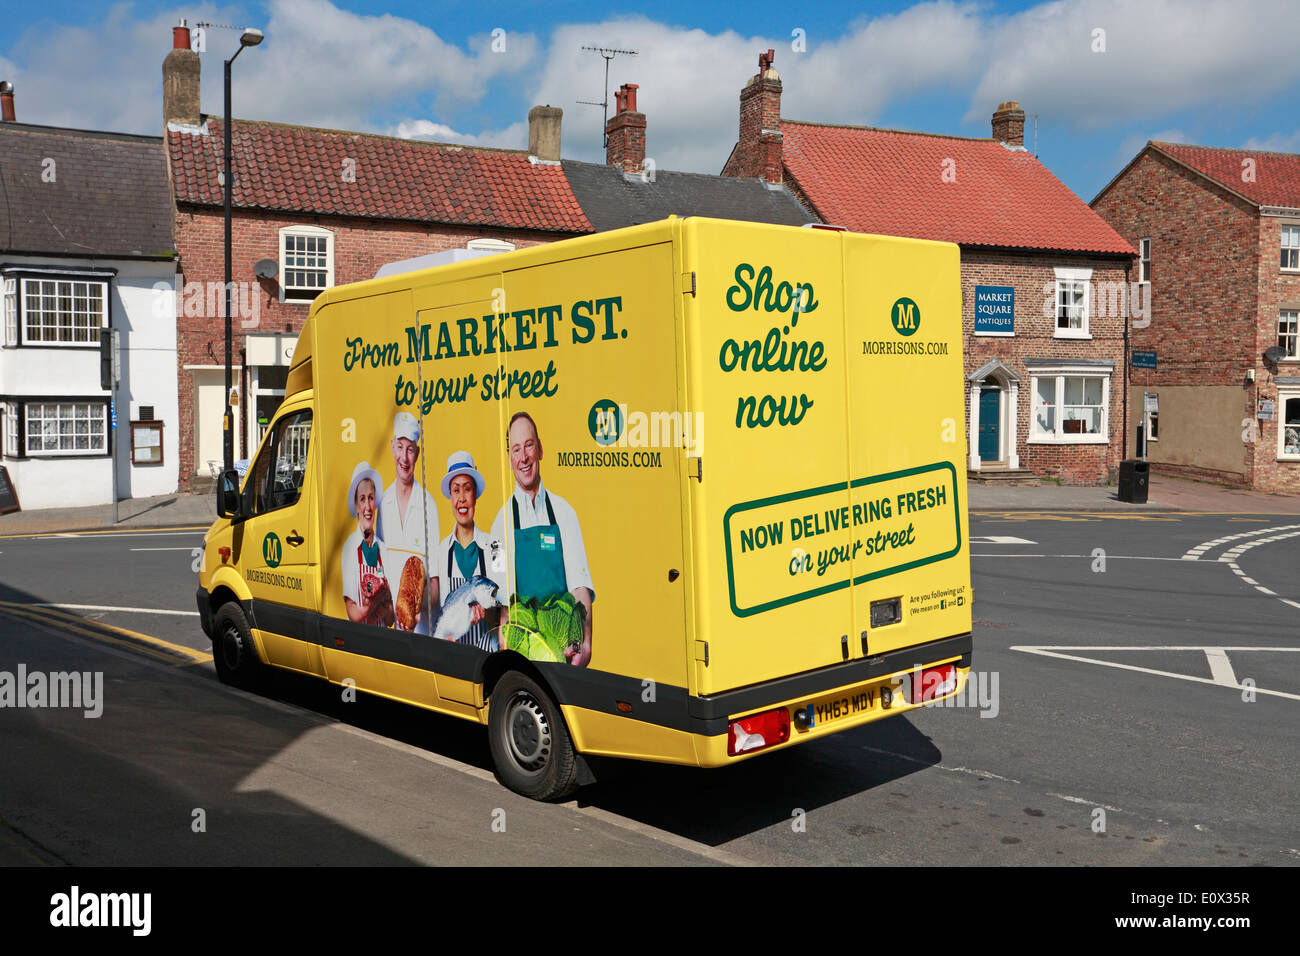 Morrisons inicio entrega camioneta estacionada en Boroughbridge, North Yorkshire, Inglaterra, Reino Unido. Foto de stock